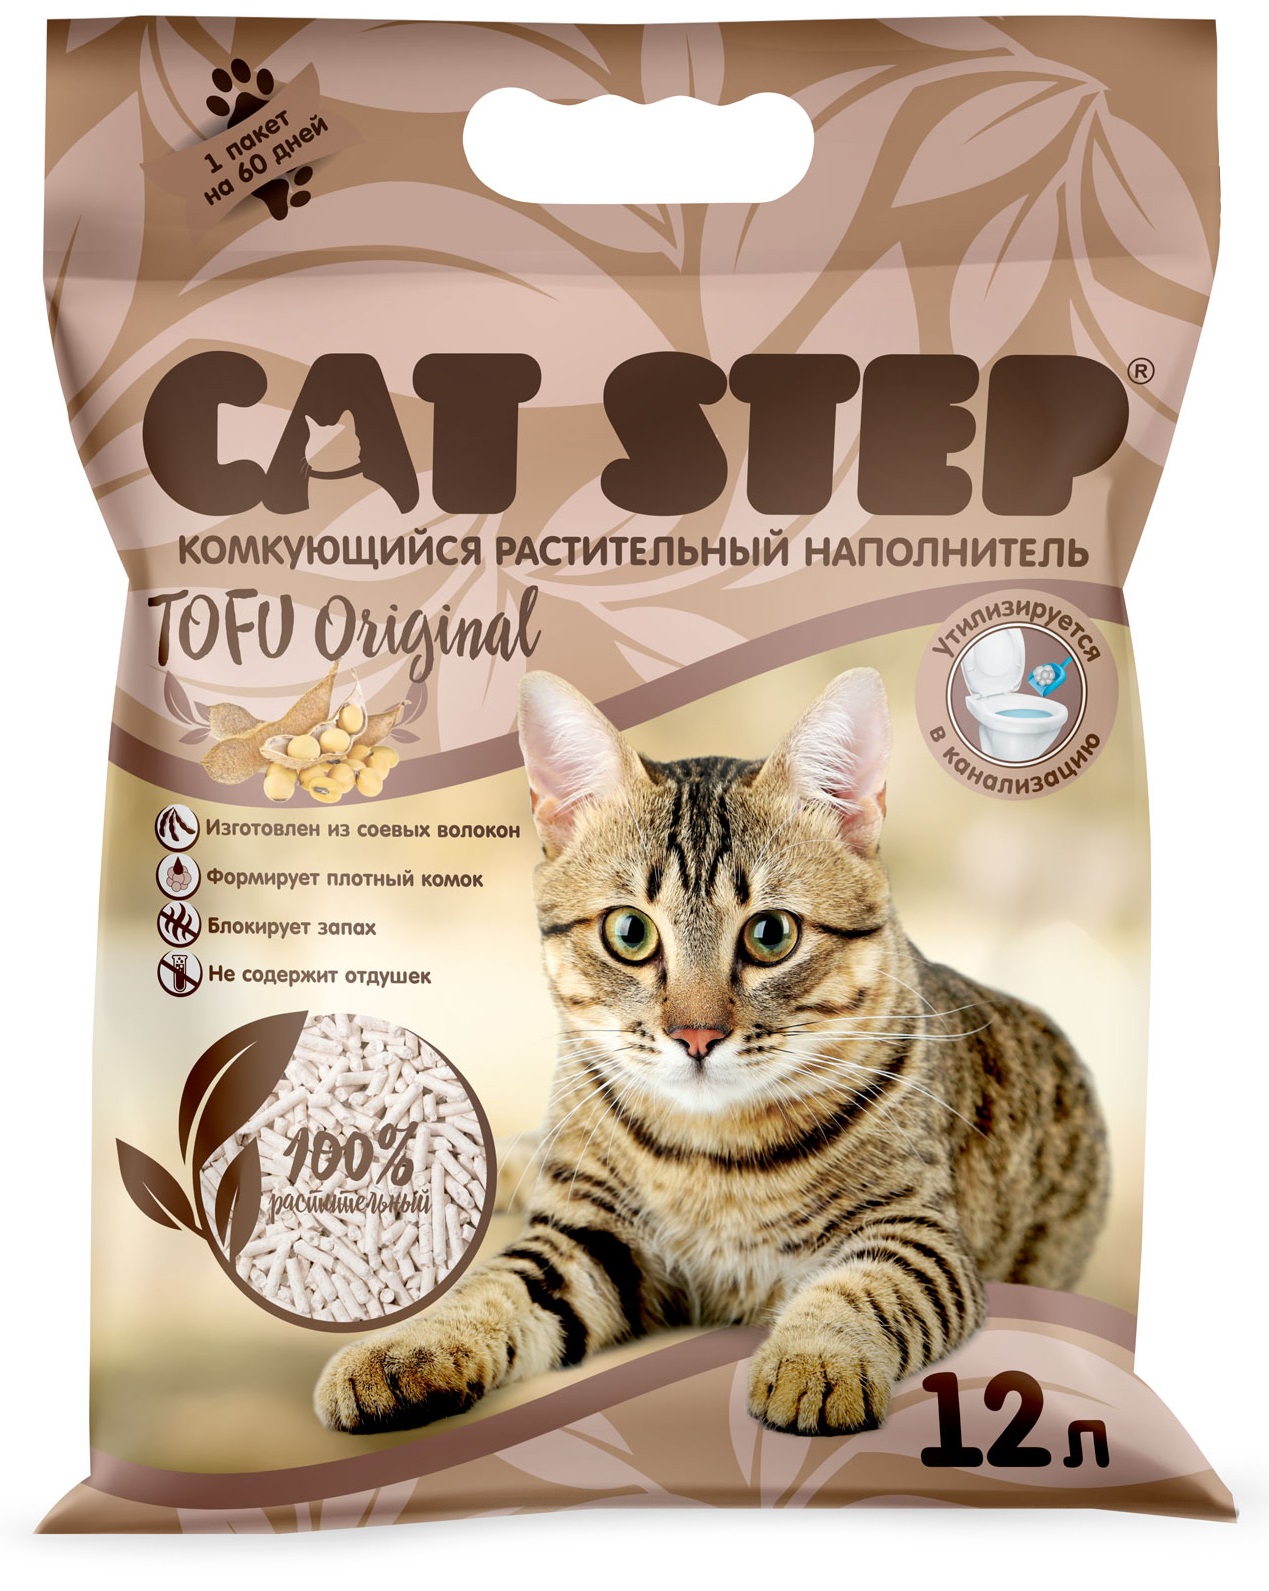 Наполнитель комкующийся растительный для кошачьего туалета Cat step tofu original 12 л